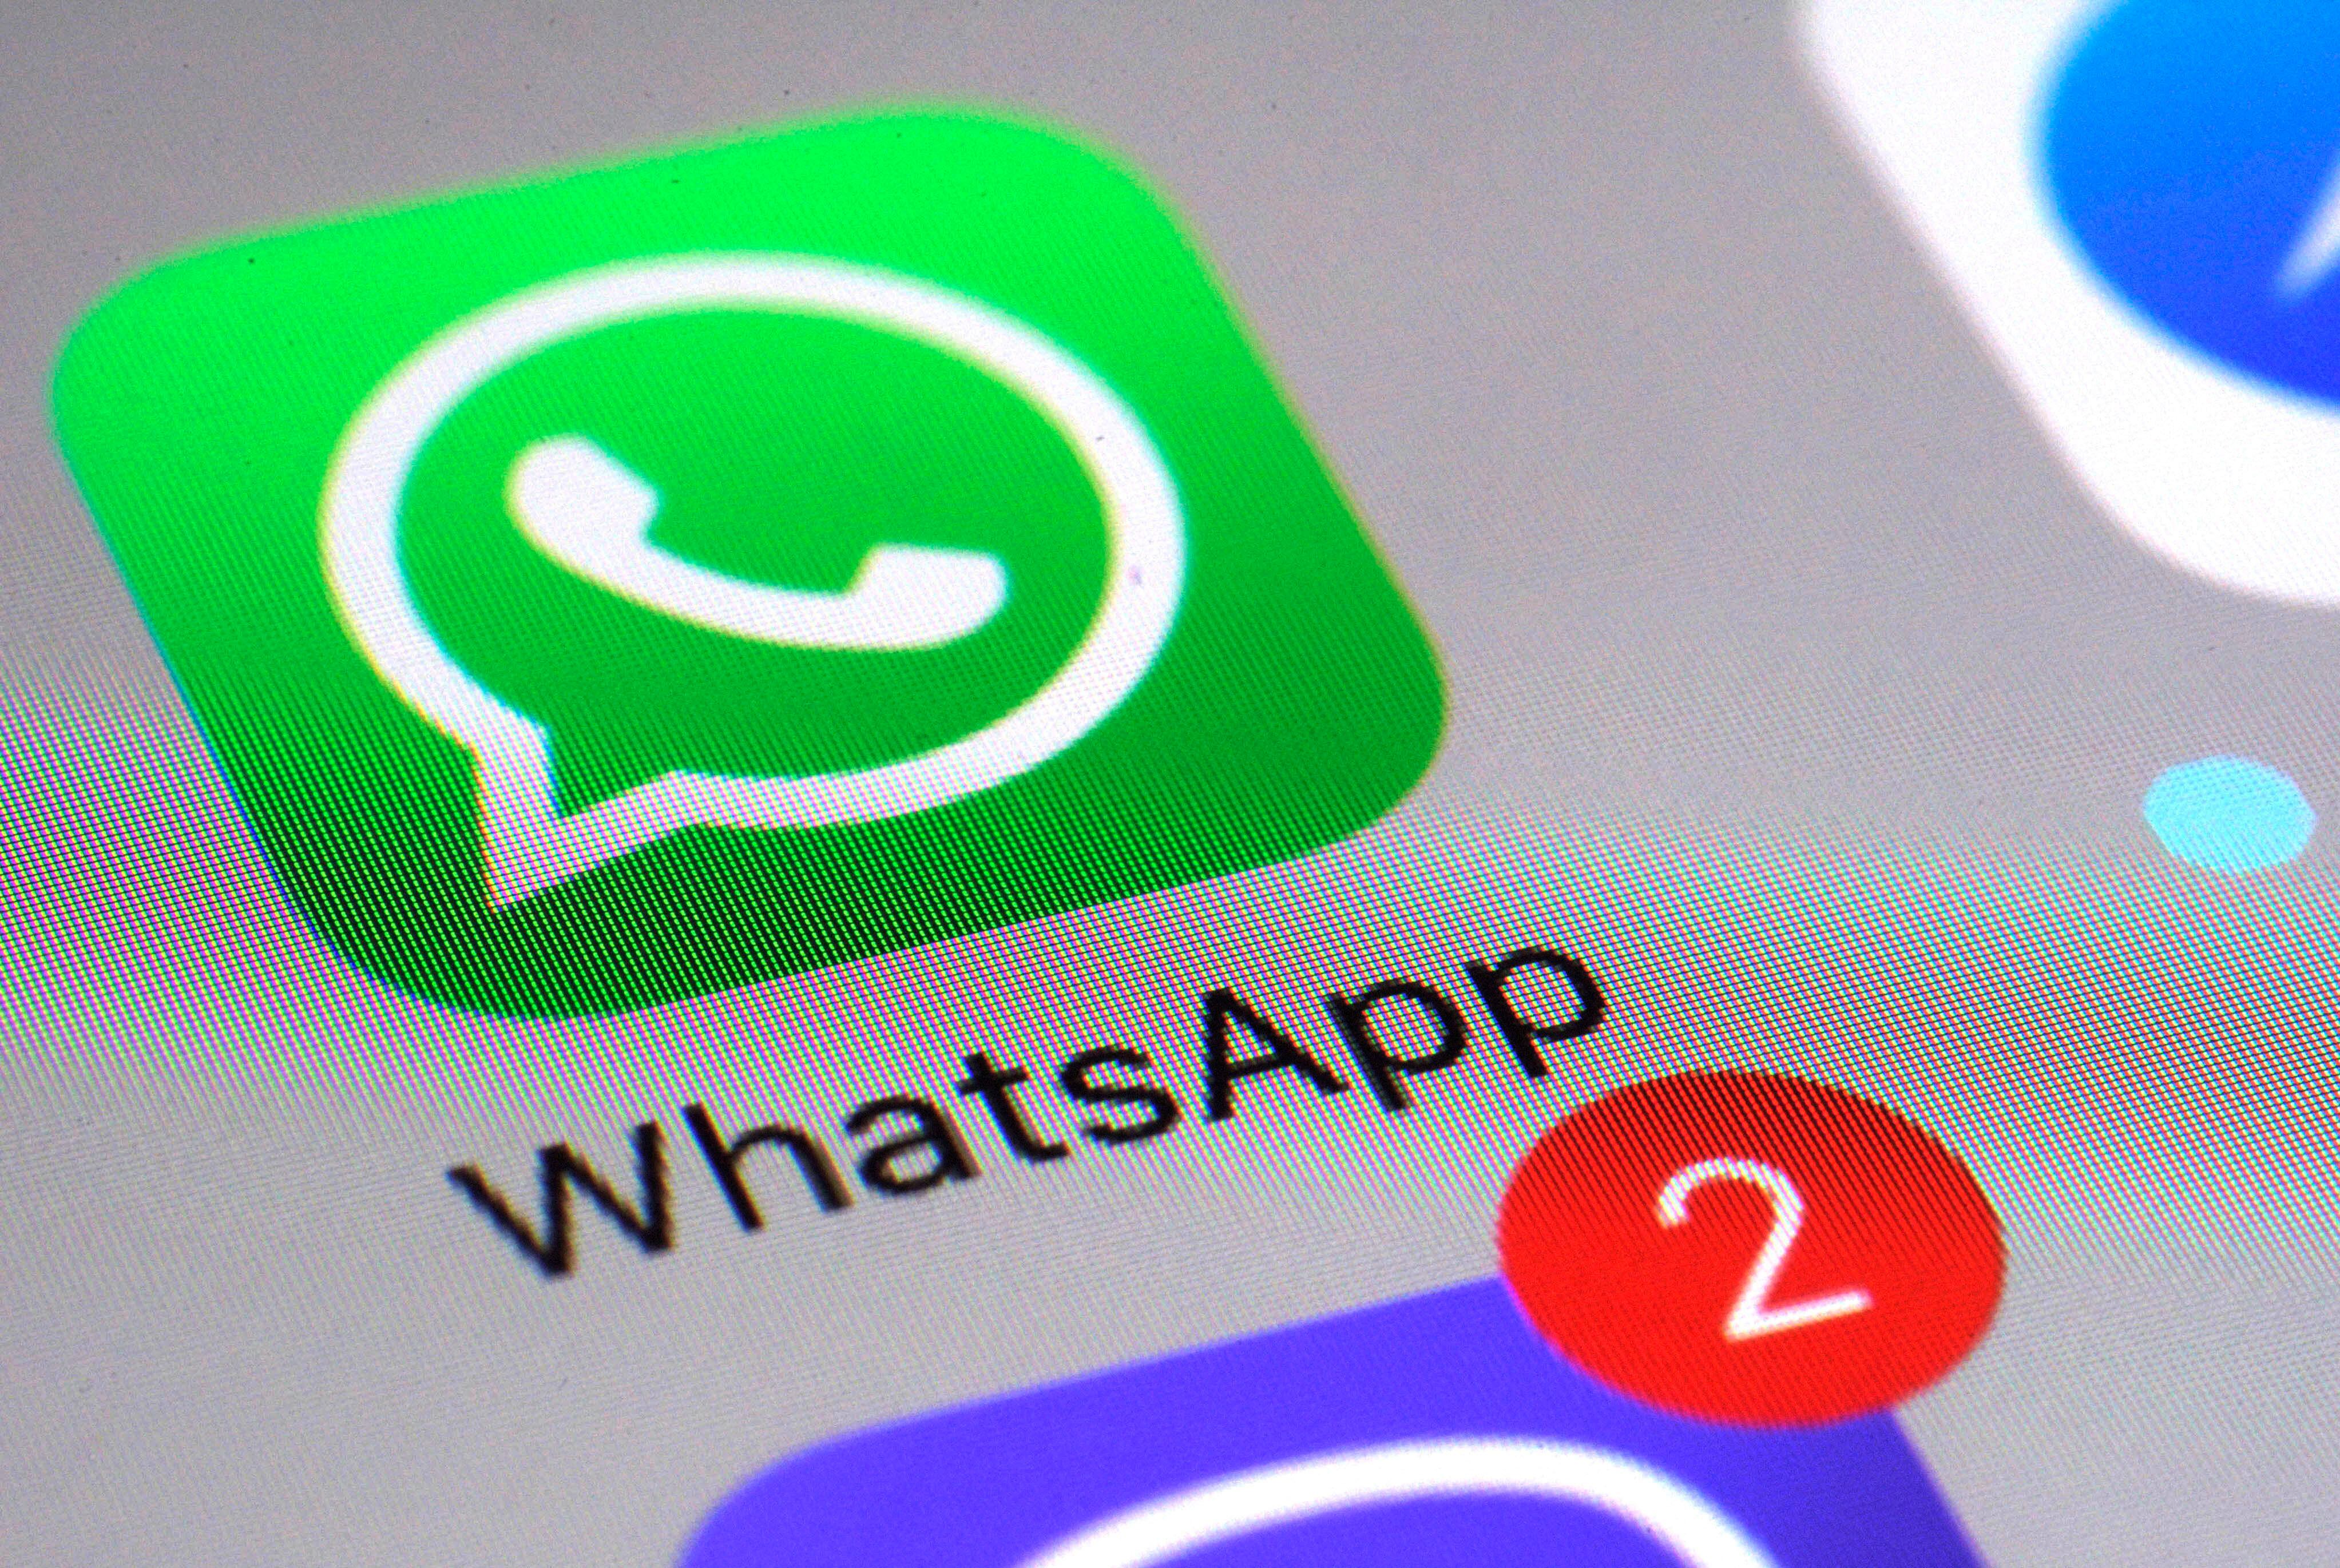 WhatsApp le permite a los usuarios saber su actividad en la aplicación, para tener datos y entender cómo la usan. (AP Foto/Patrick Sison, Archivo)